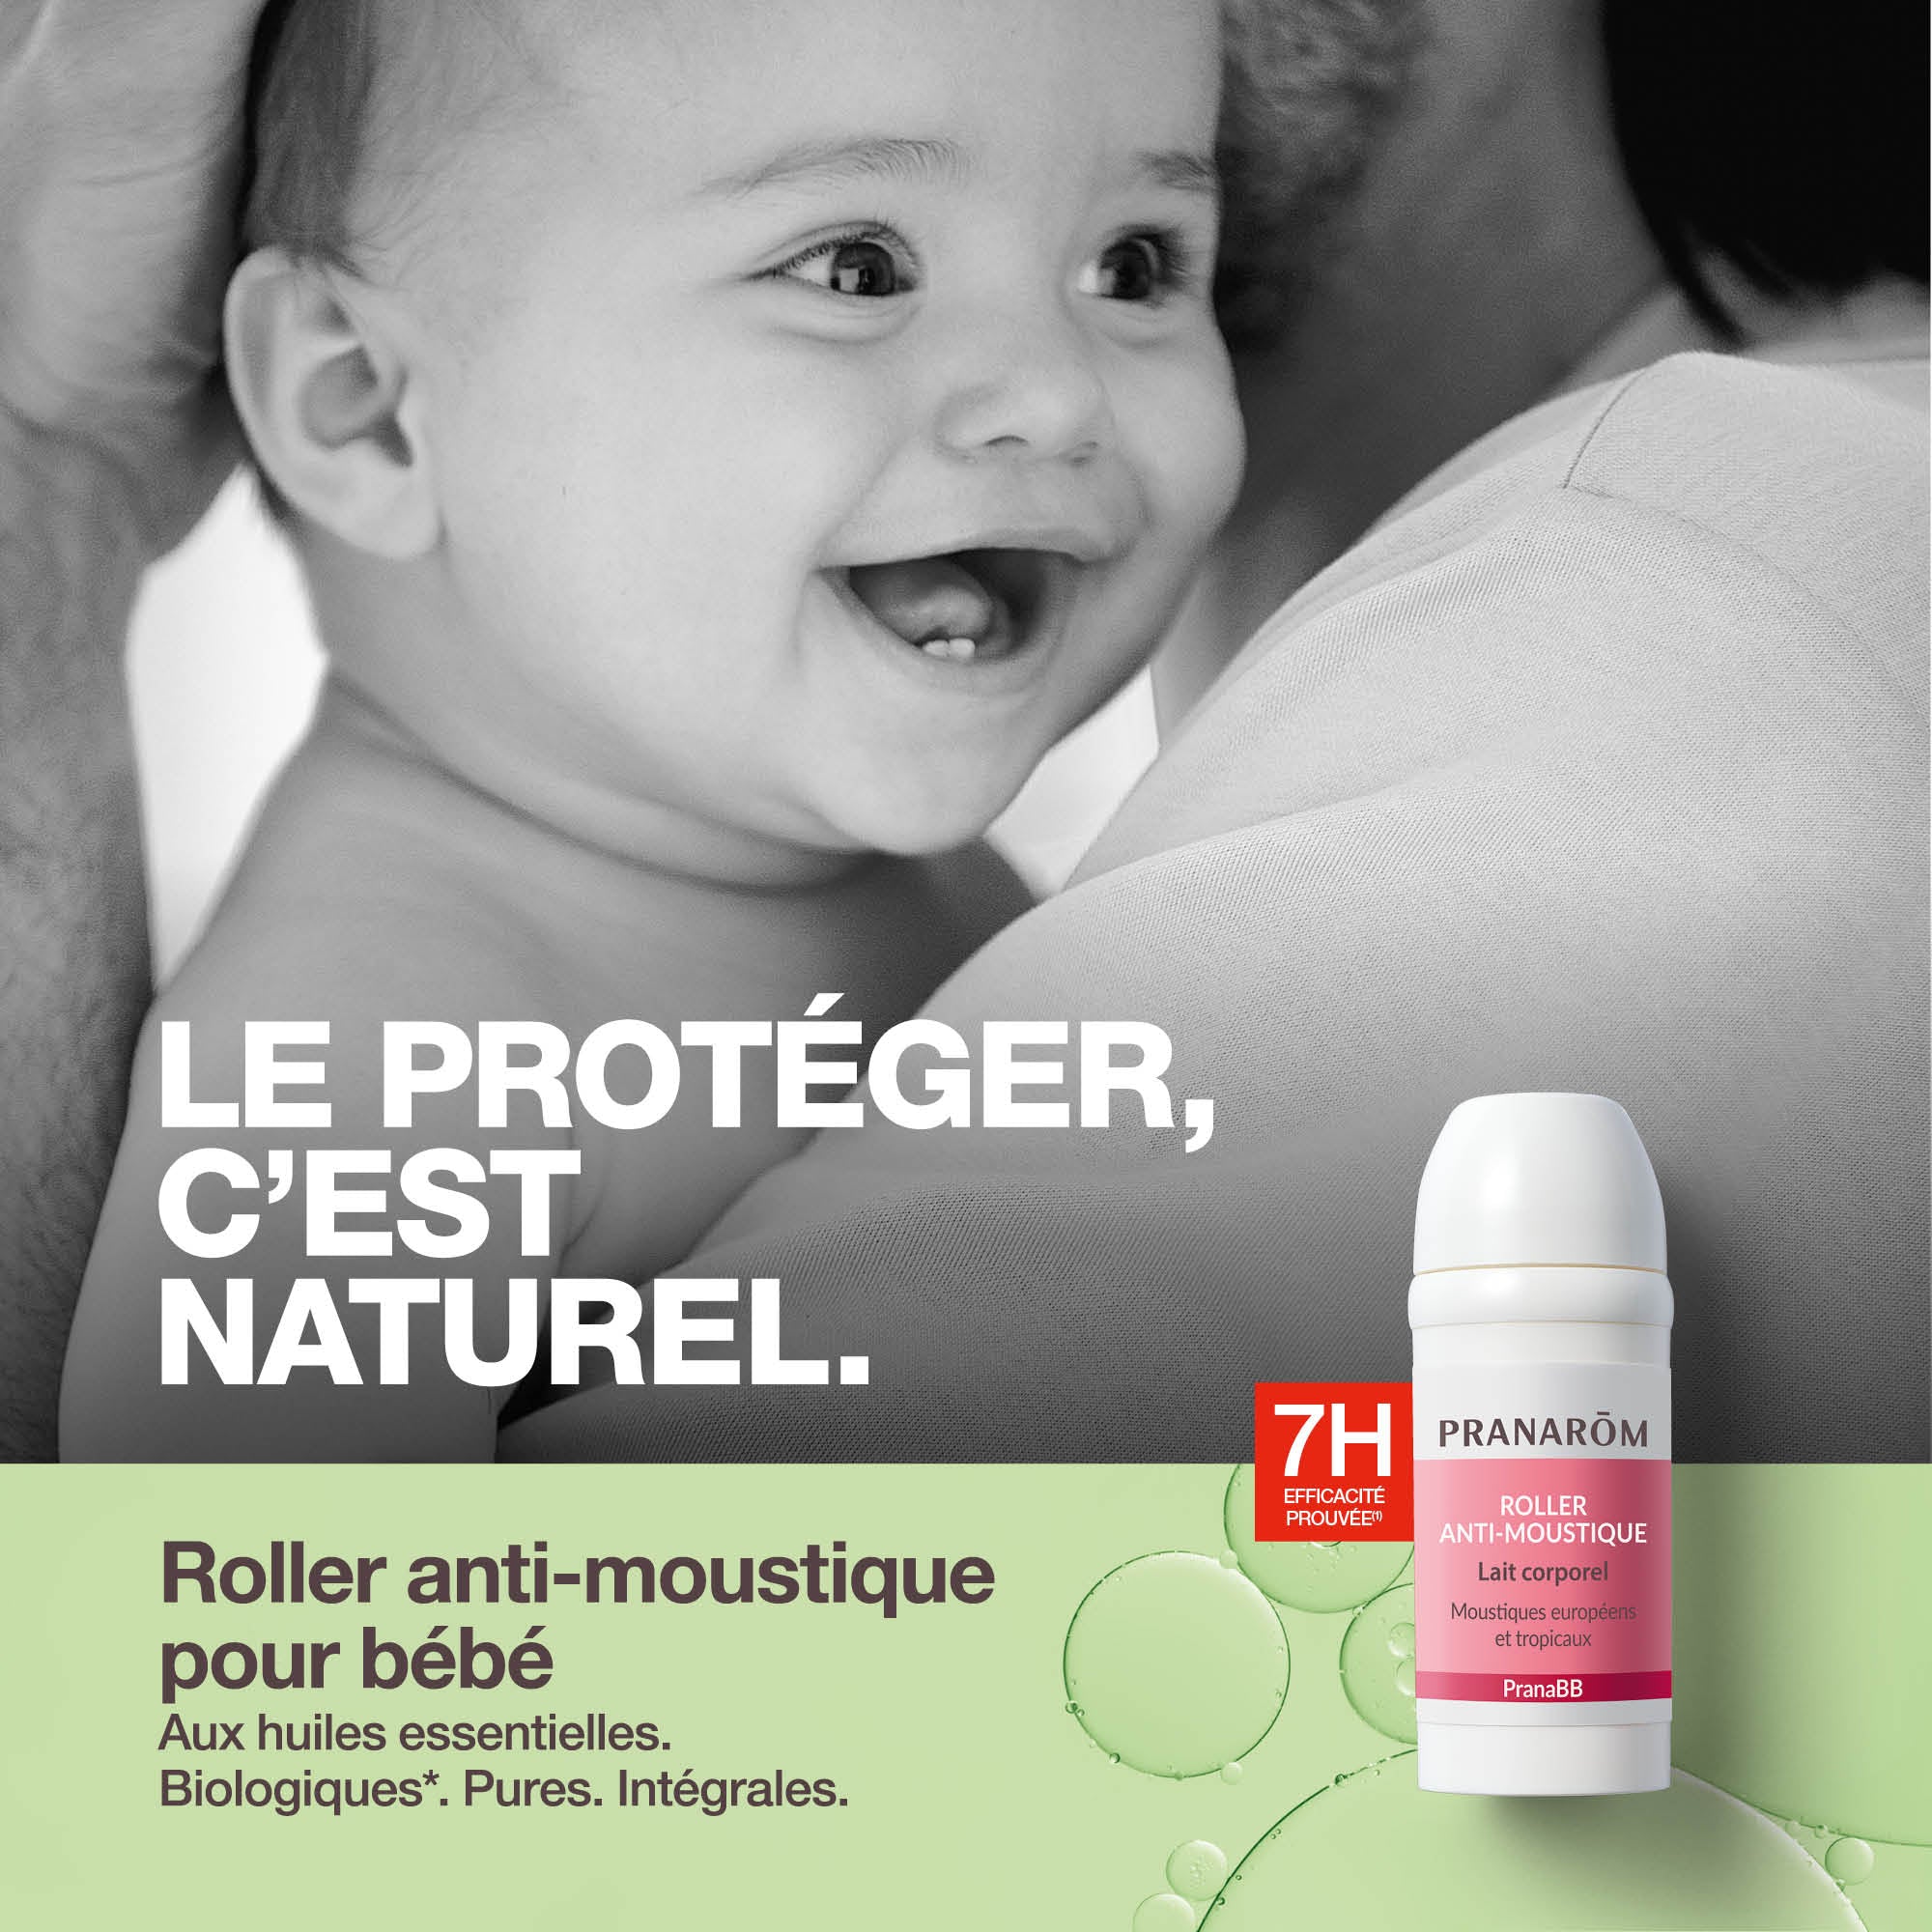 Anti-moustique bébé: formule dès 2 mois et pour toute la famille